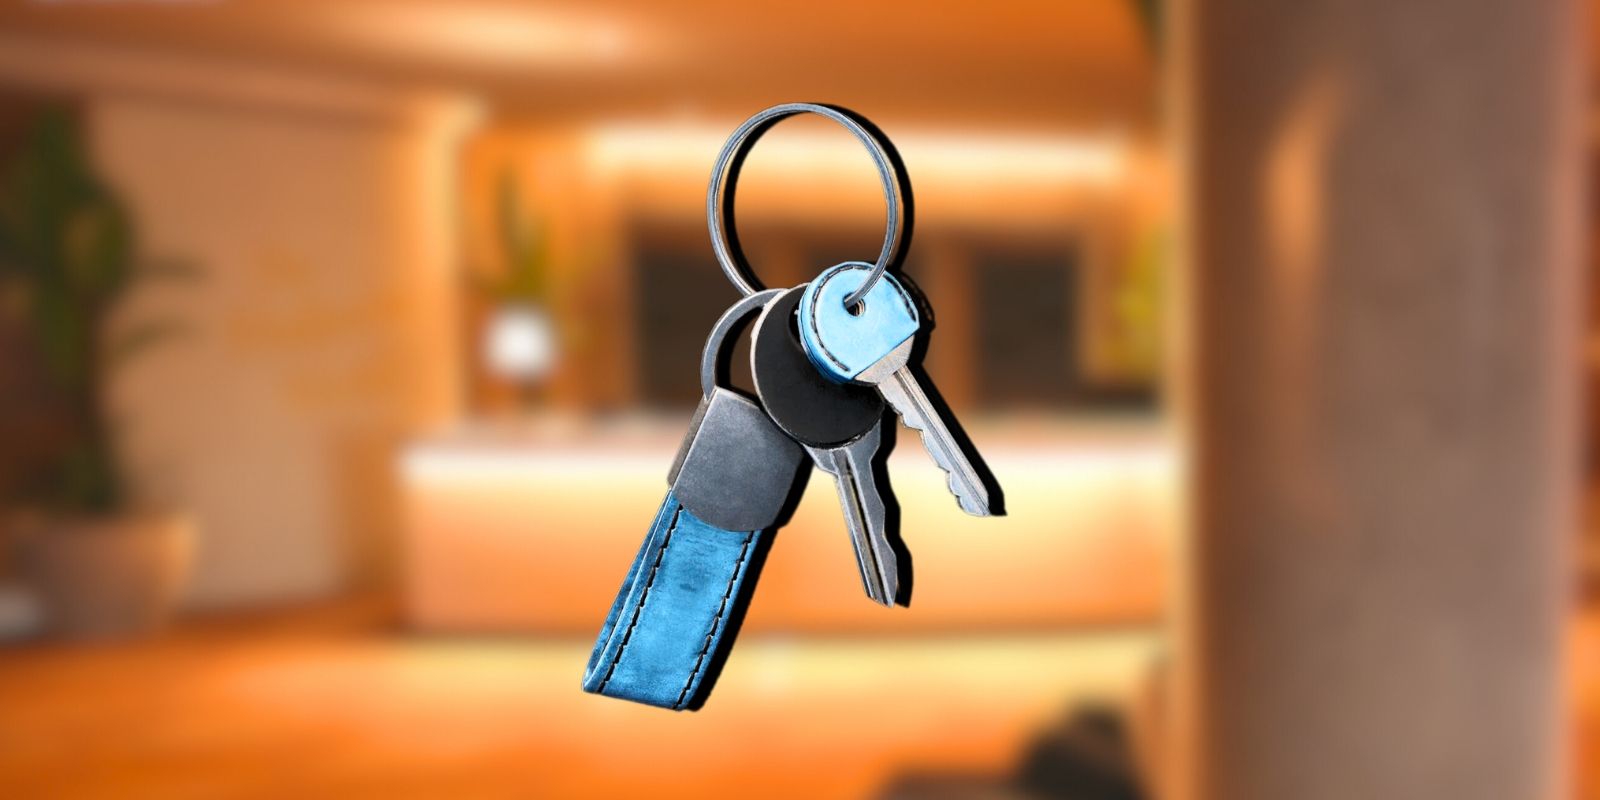 Safety Deposit Keys From Dead Island 2